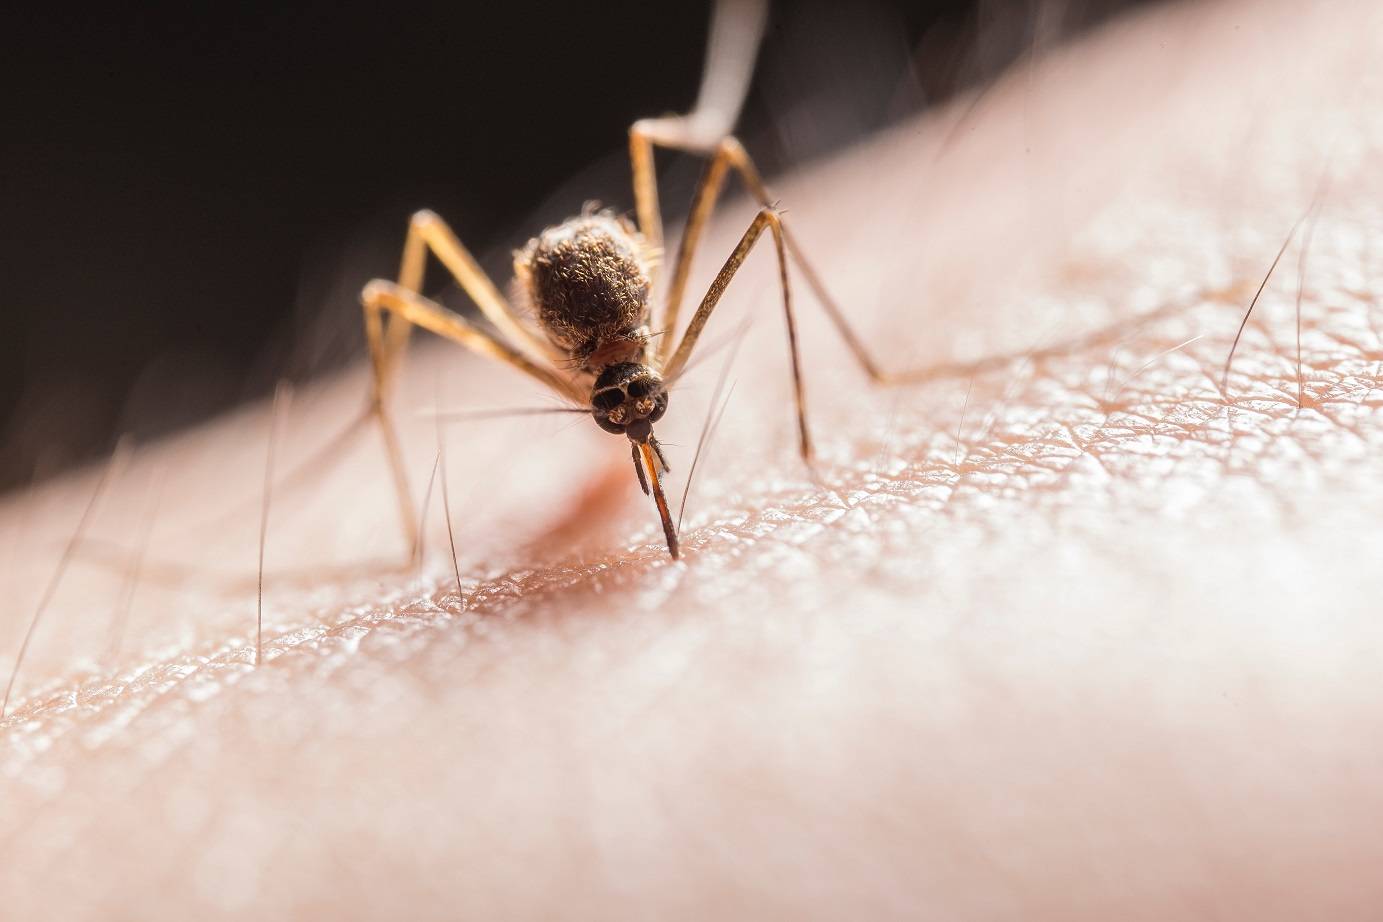 Confirman el primer caso de dengue autóctono en San Luis